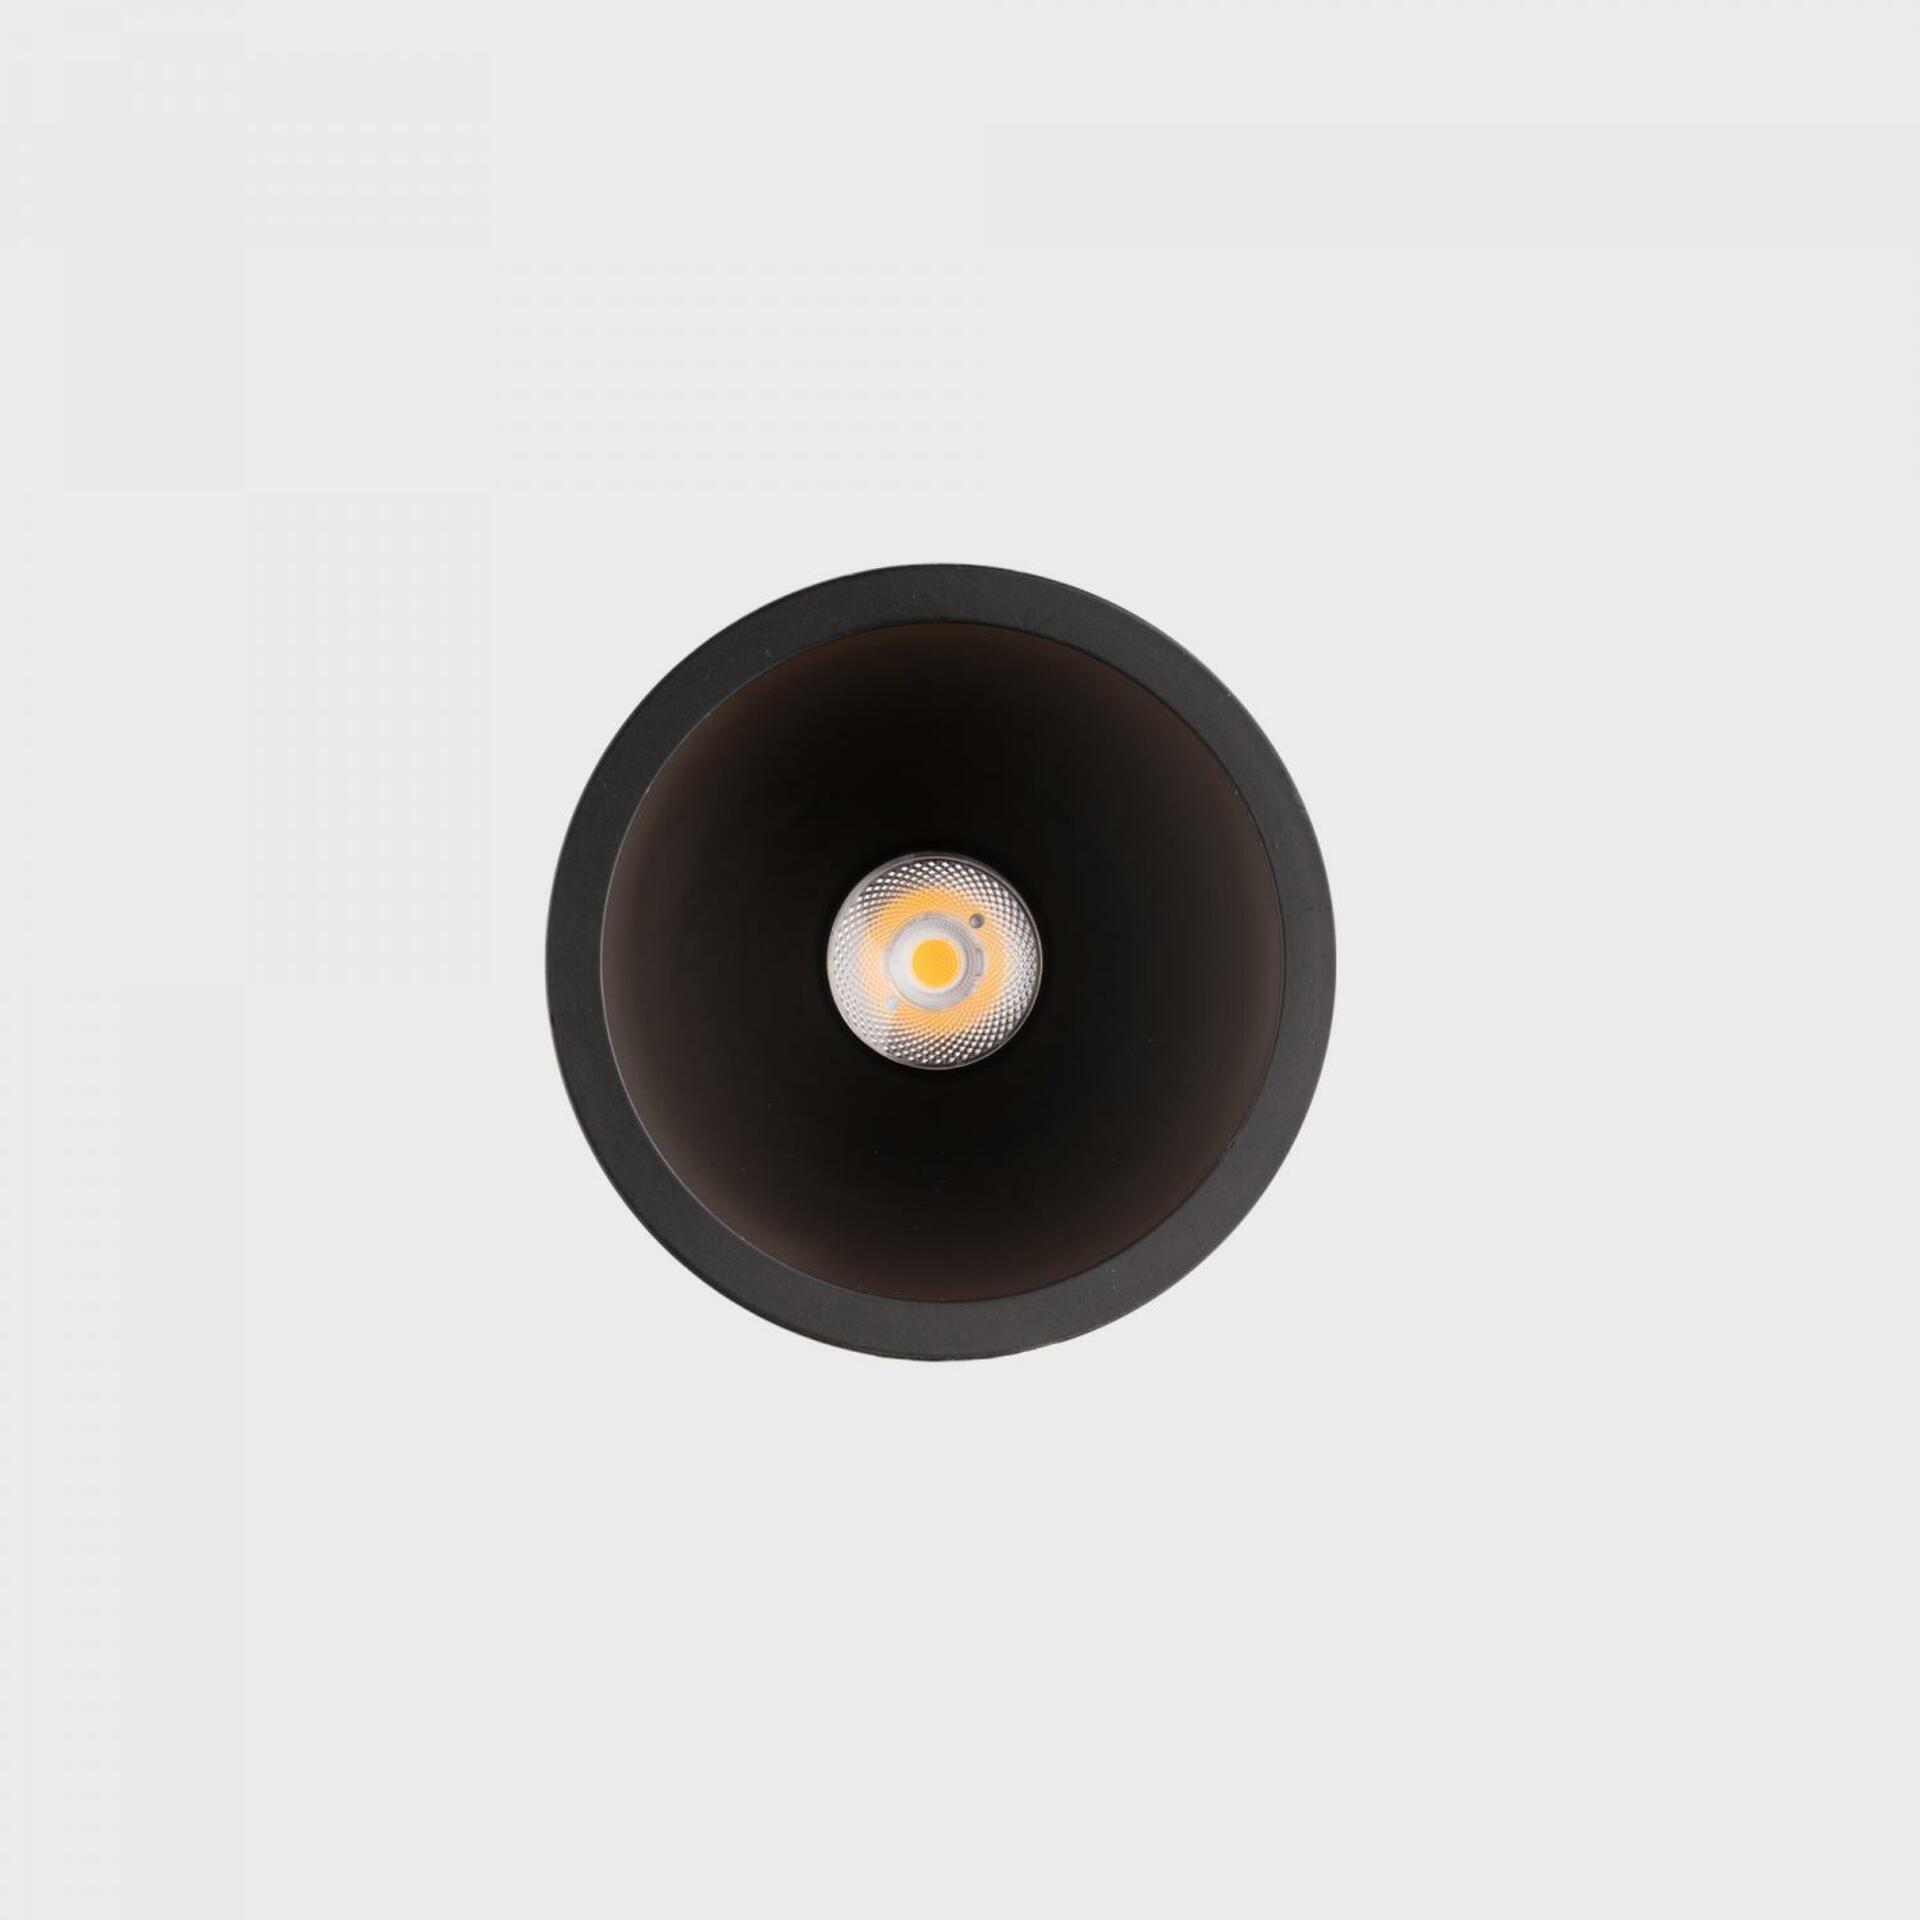 KOHL LIGHTING KOHL-Lighting NOON zapuštěné svítidlo s rámečkem pr. 70 mm černá 38° 5 W  CRI 80 2700K DALI